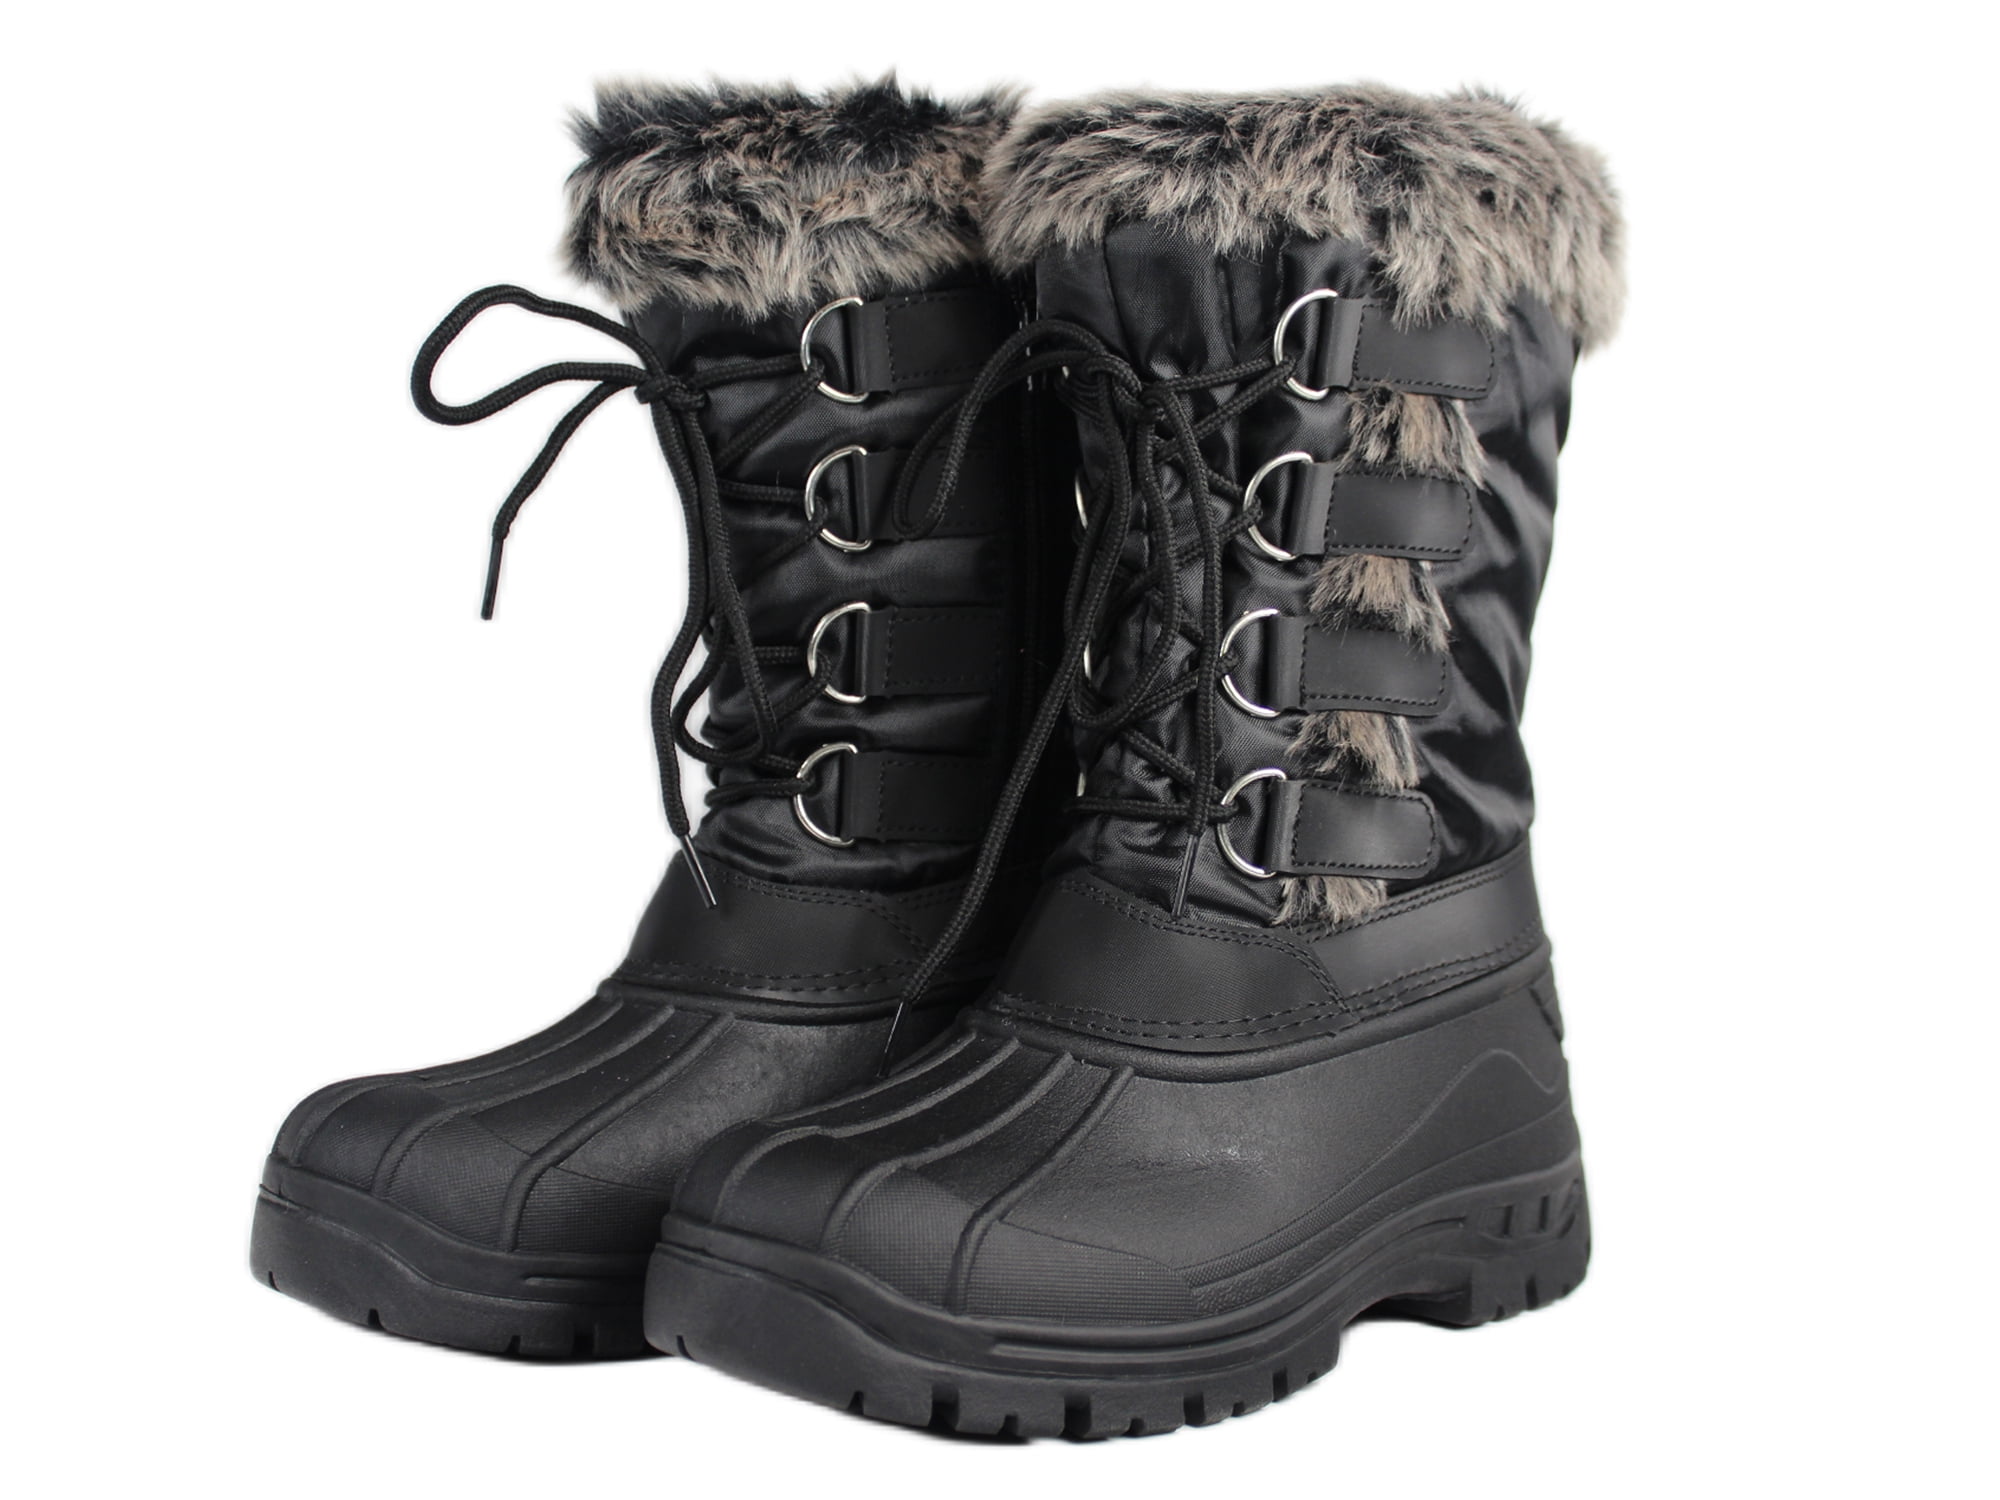 OwnShoe Women's Lace Up Faux Fur Rubber Duck Snow Boots - Walmart.com